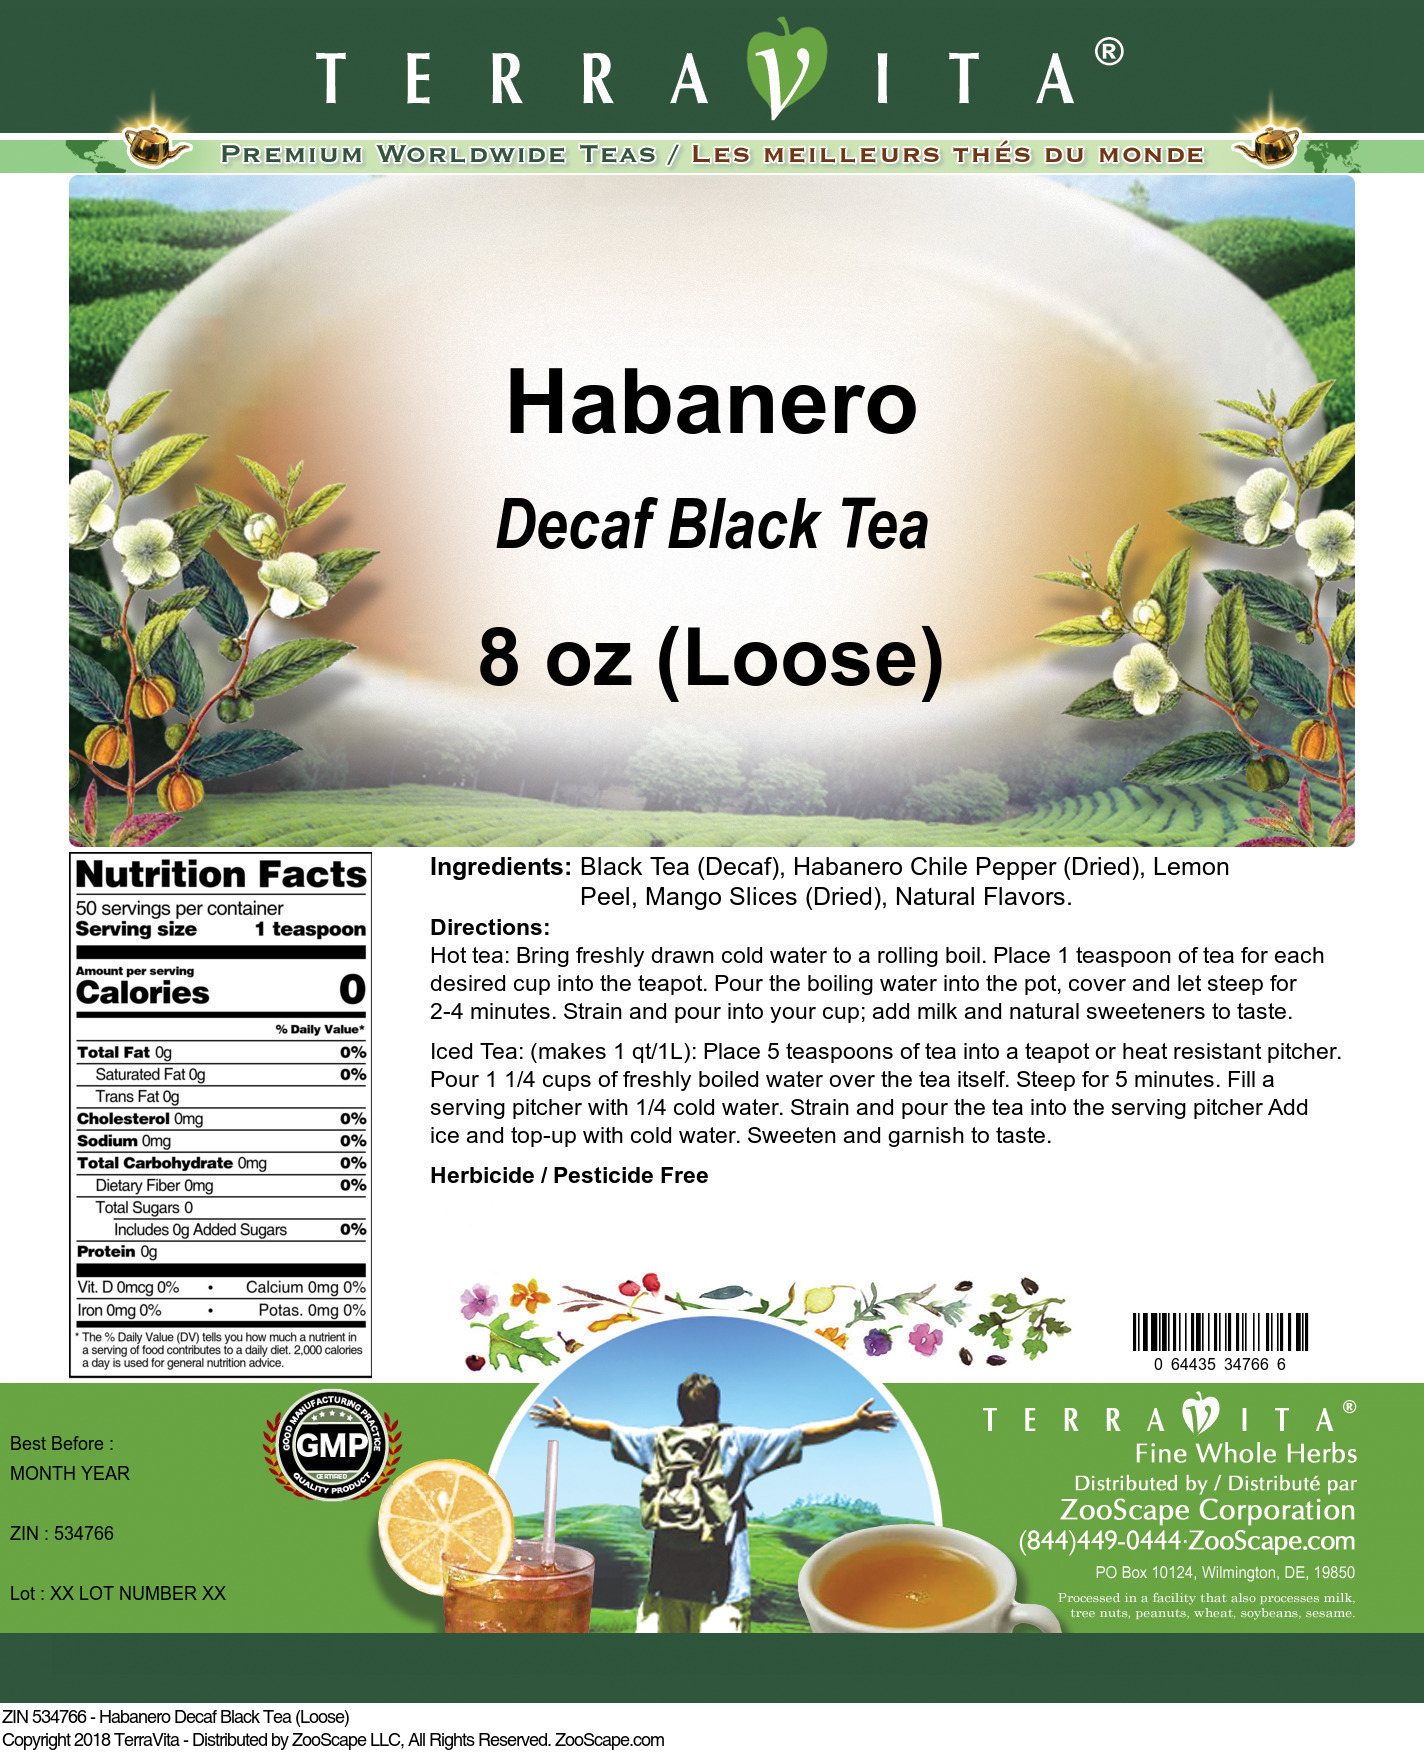 Habanero Decaf Black Tea (Loose) - Label